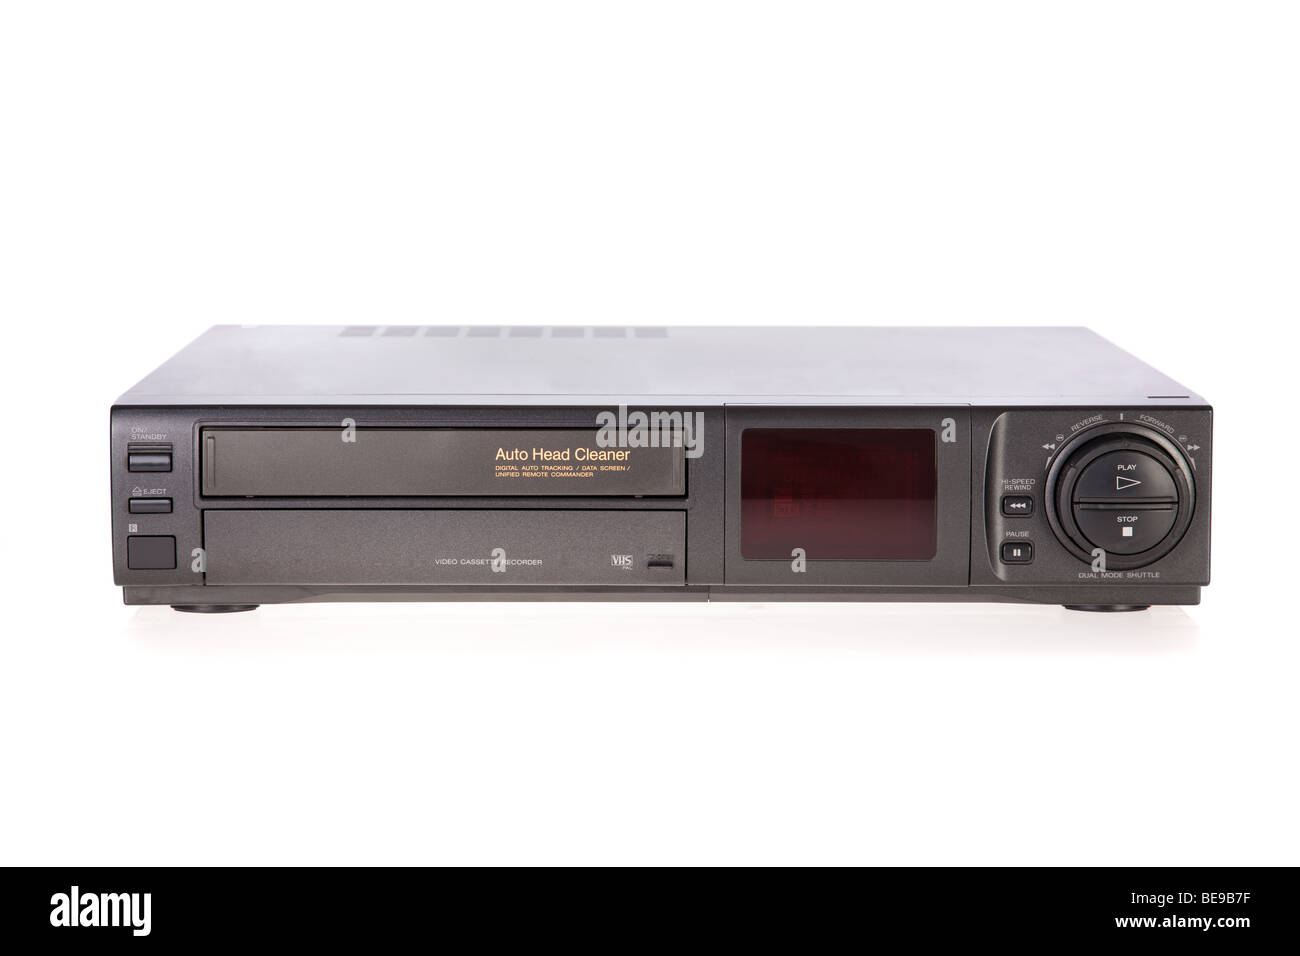 Cassette VHS auto-nettoyante pour magnétoscope 